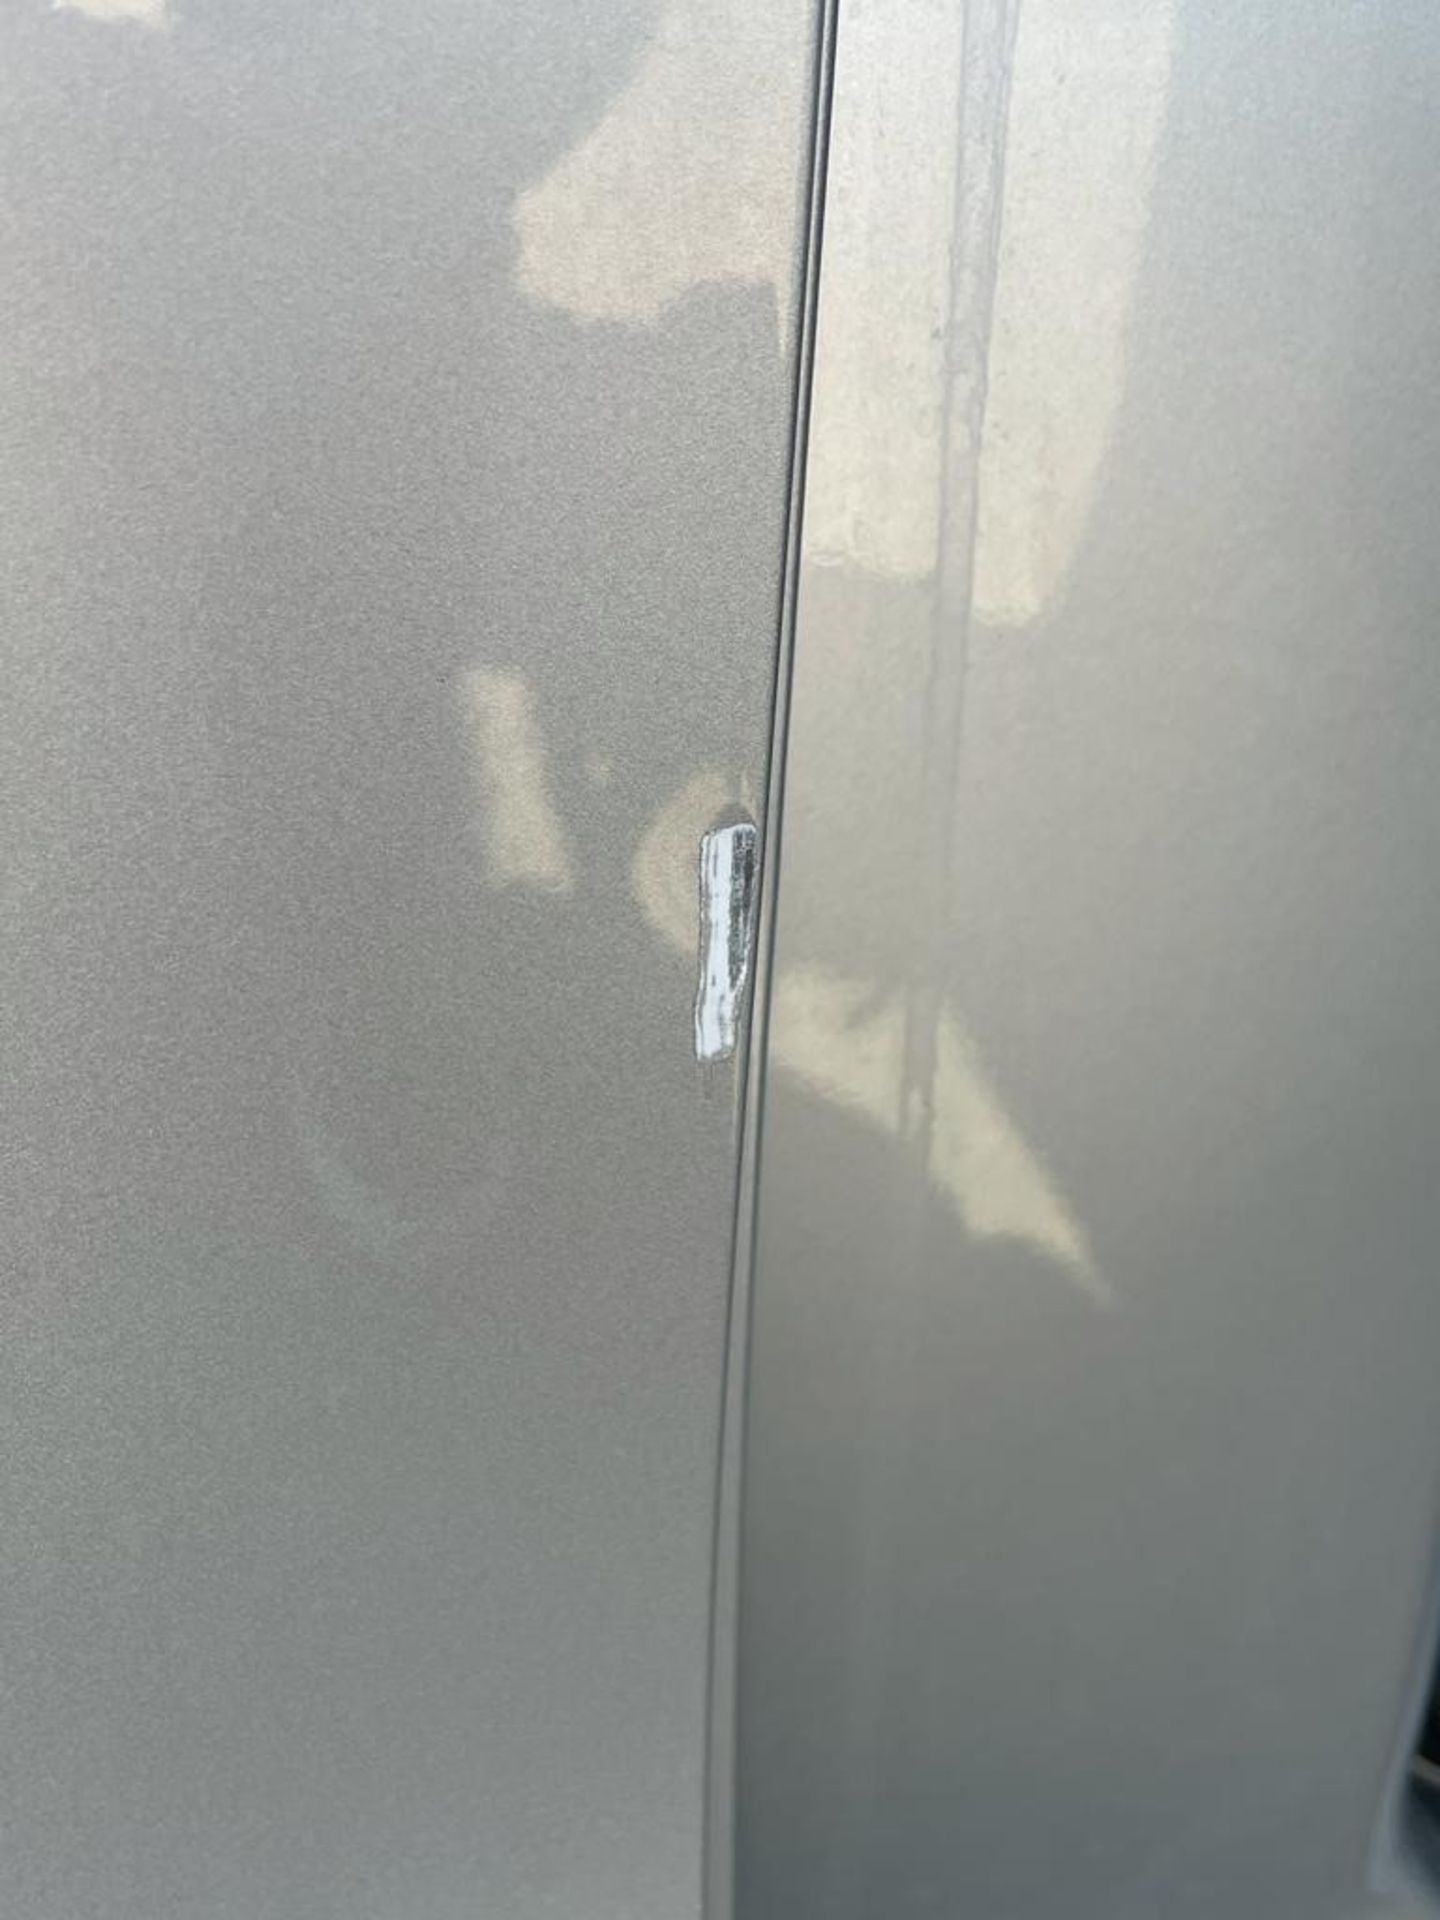 Mercedes Vito Panel Van, Registration Number BM19 WFB, First Registered 28th June 2019, First MOT - Image 24 of 39